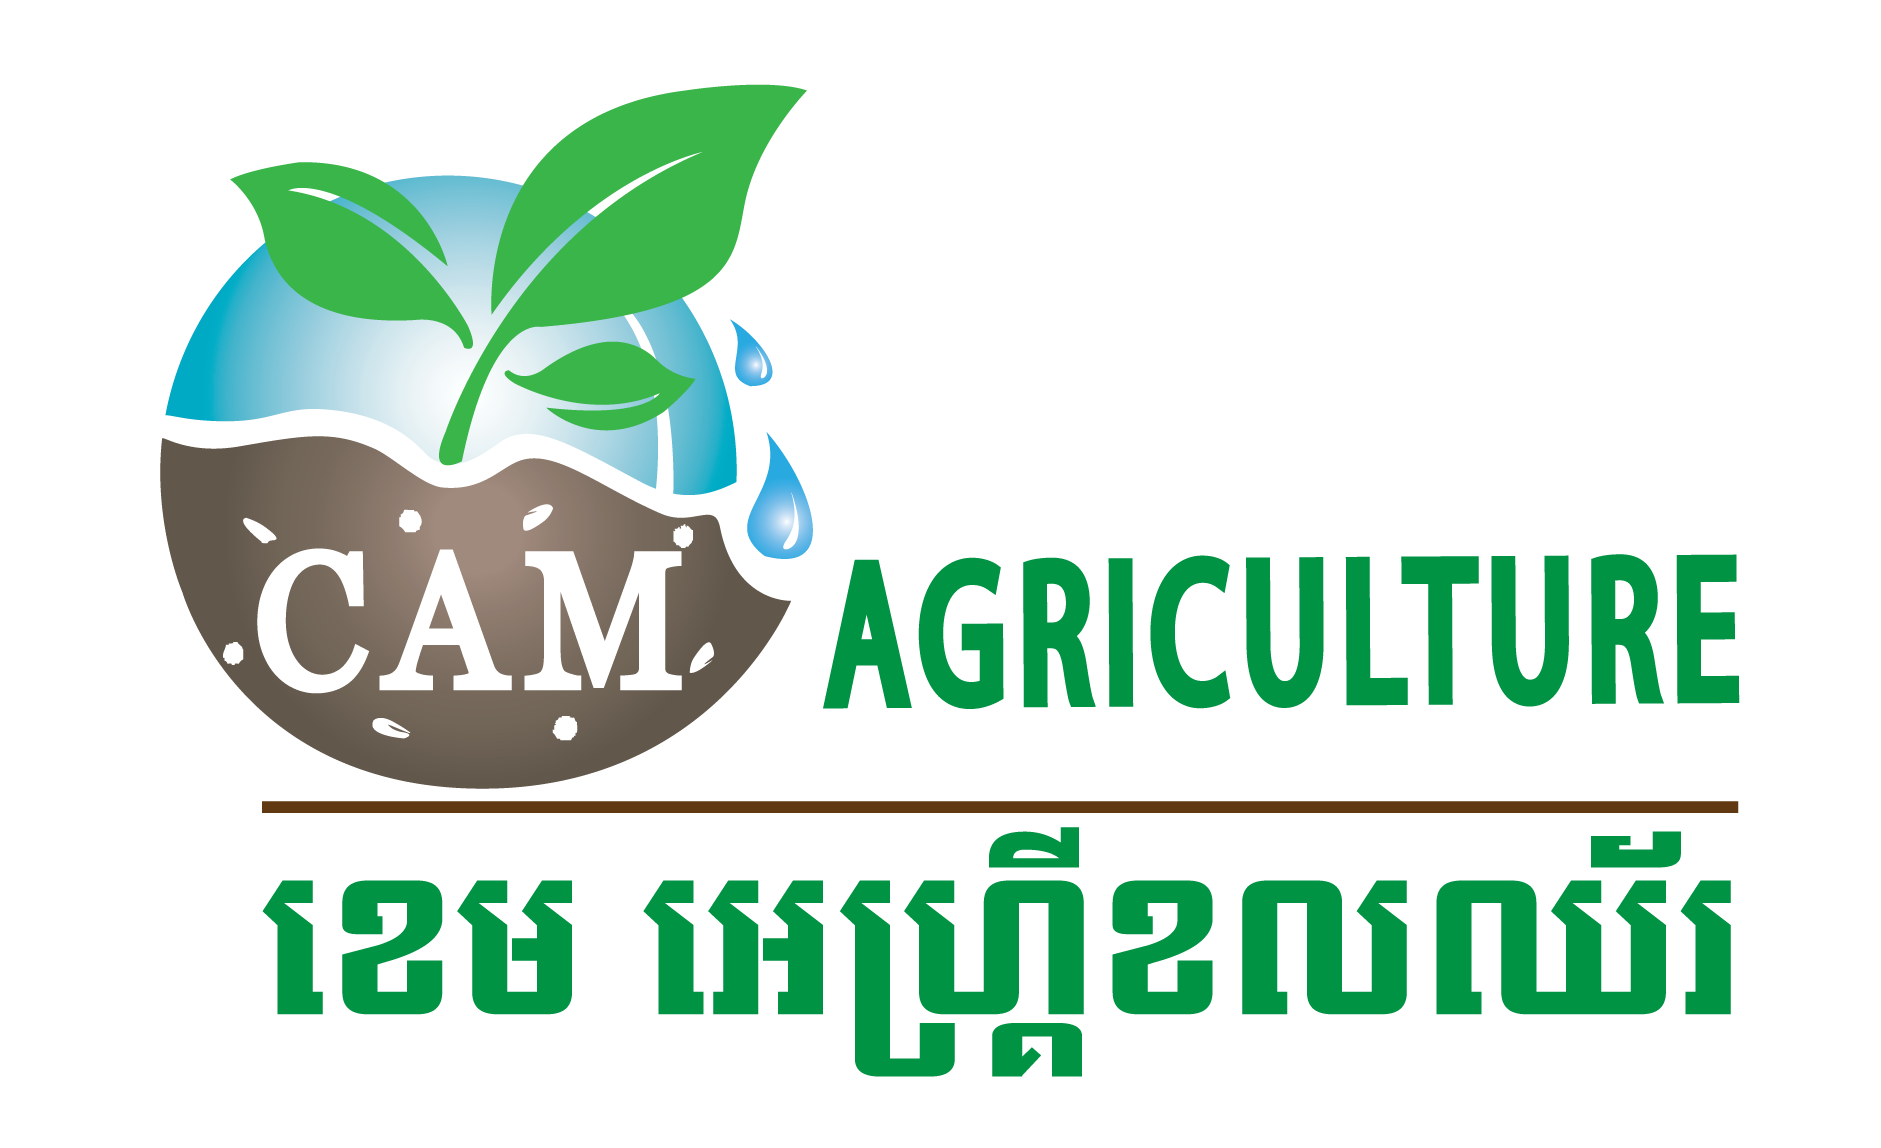 Cam Agriculture